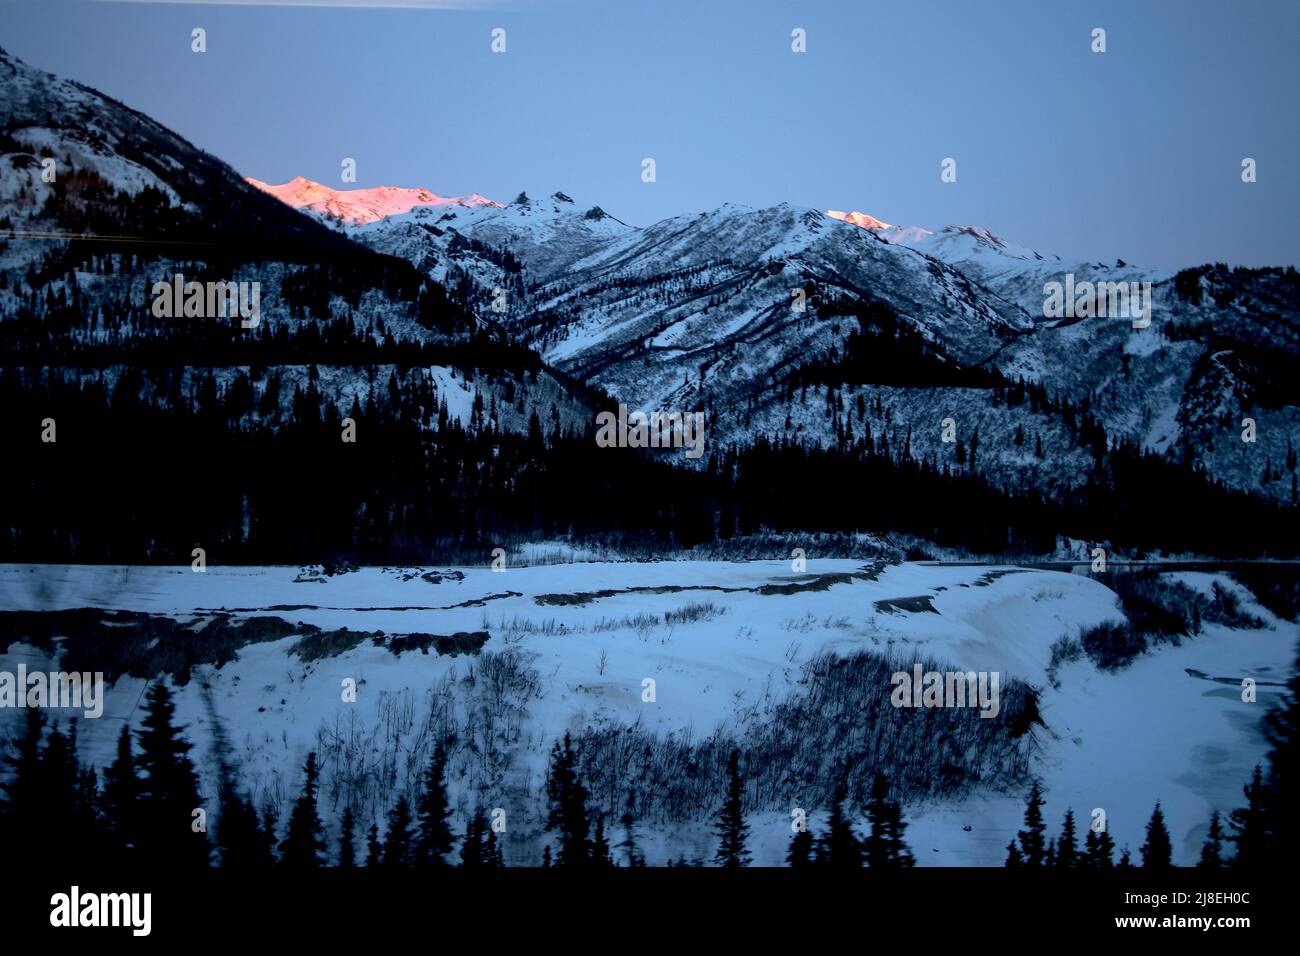 Vista de las montañas y el paisaje nevado, incluyendo un último poco de luz del sol en un acantilado, visto desde la ventana mientras viajaba en un tren de Alaska Railroad. Foto de stock